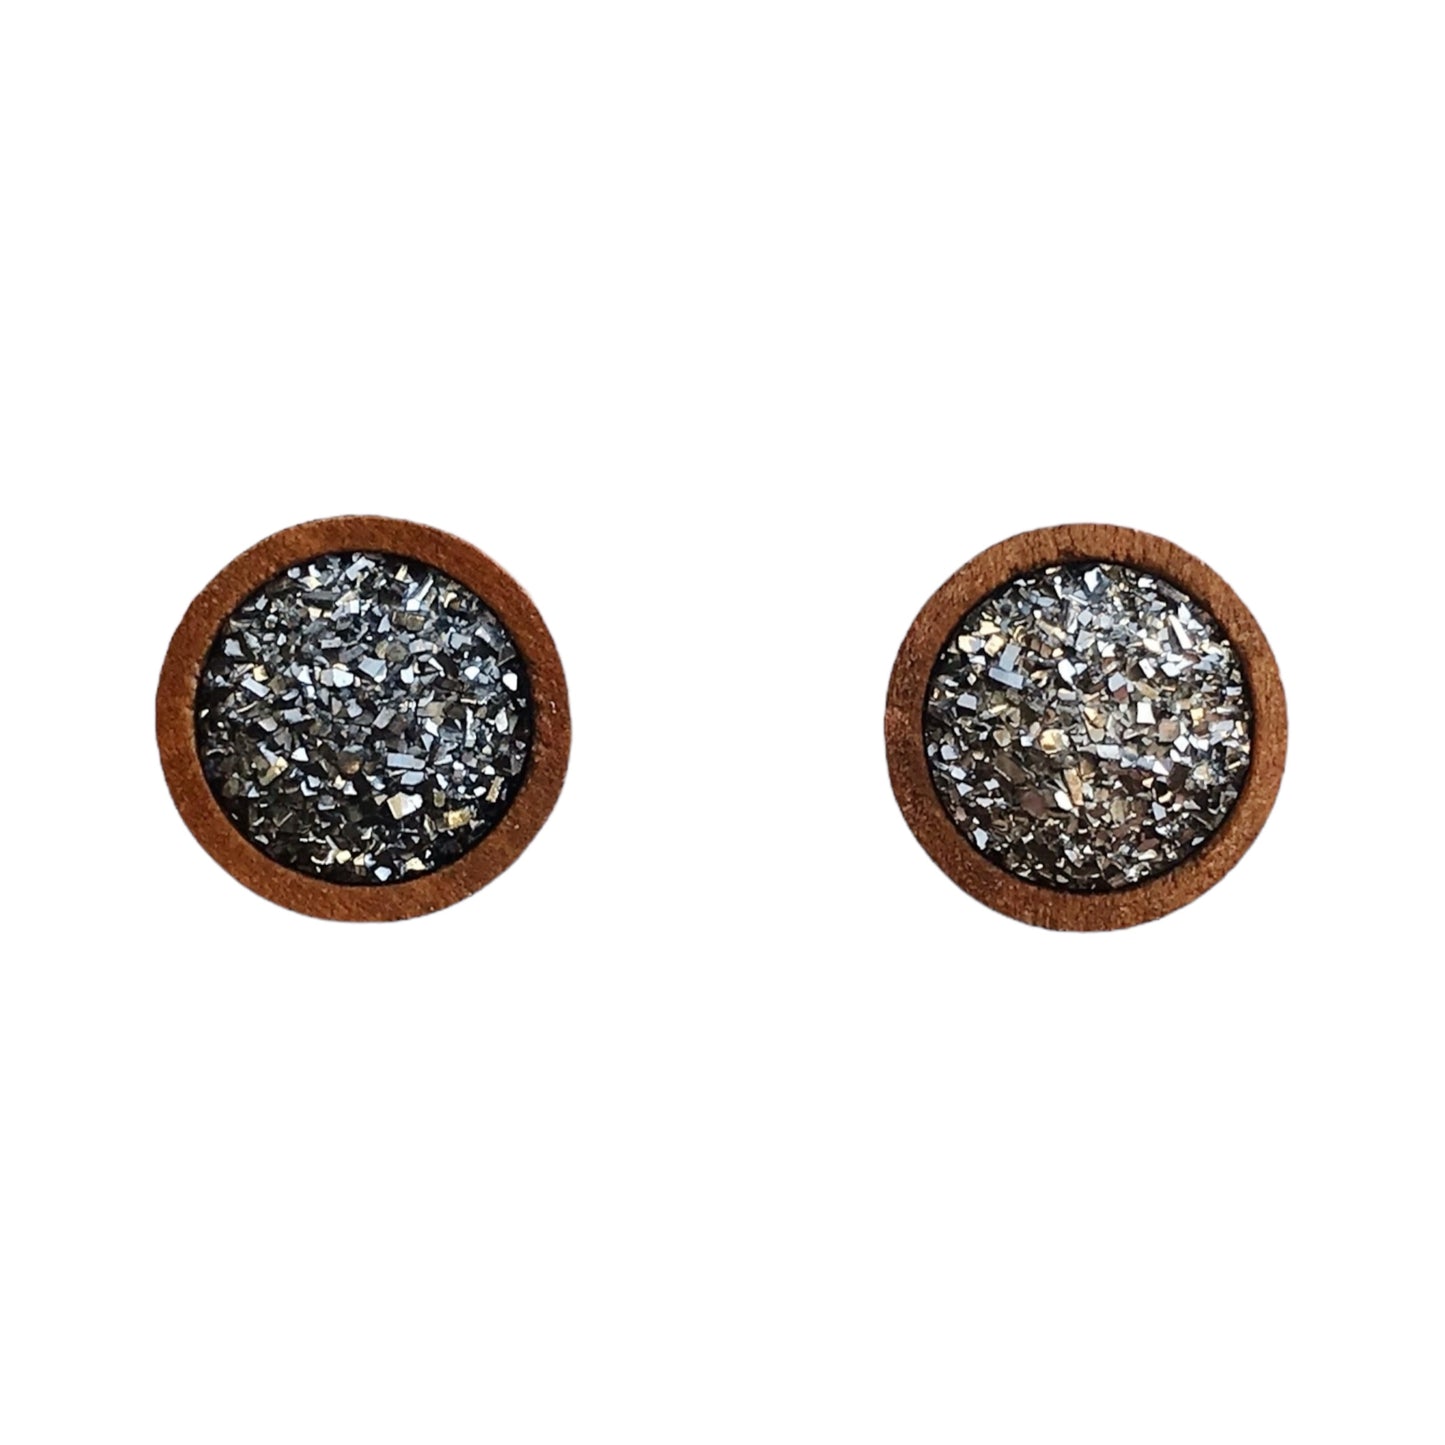 Slate Gray Druzy Wood Stud Earrings - Elegant & Natural Accessories